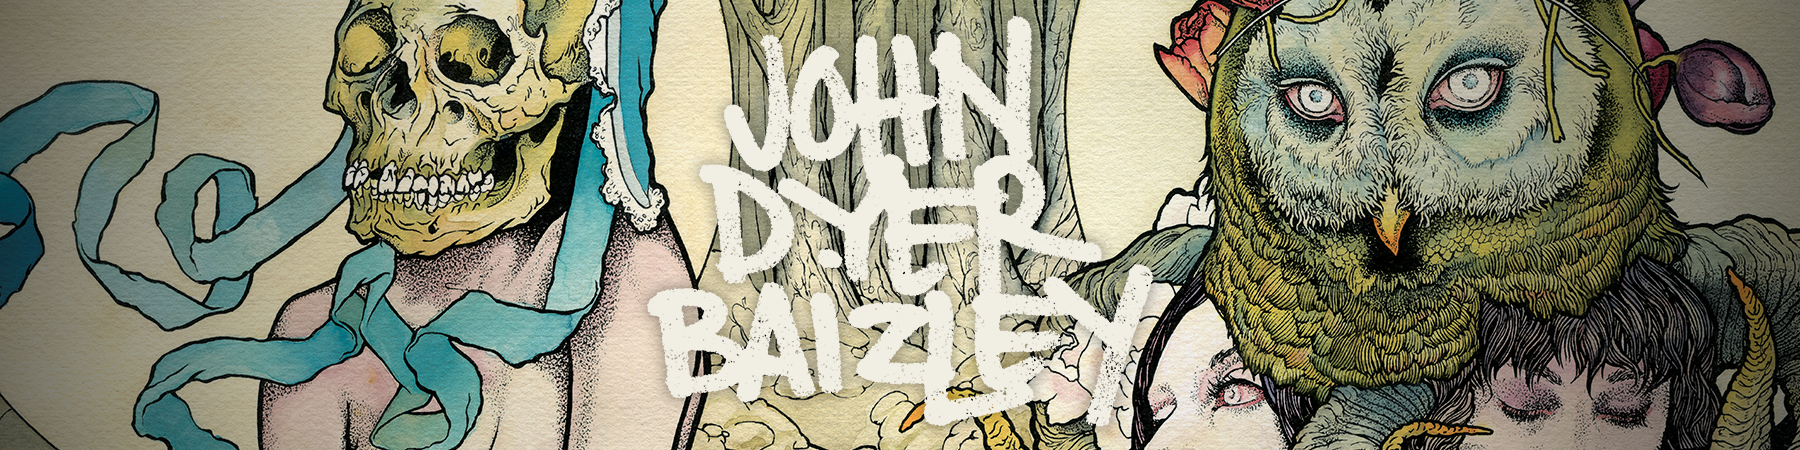 John Dyer Baizley